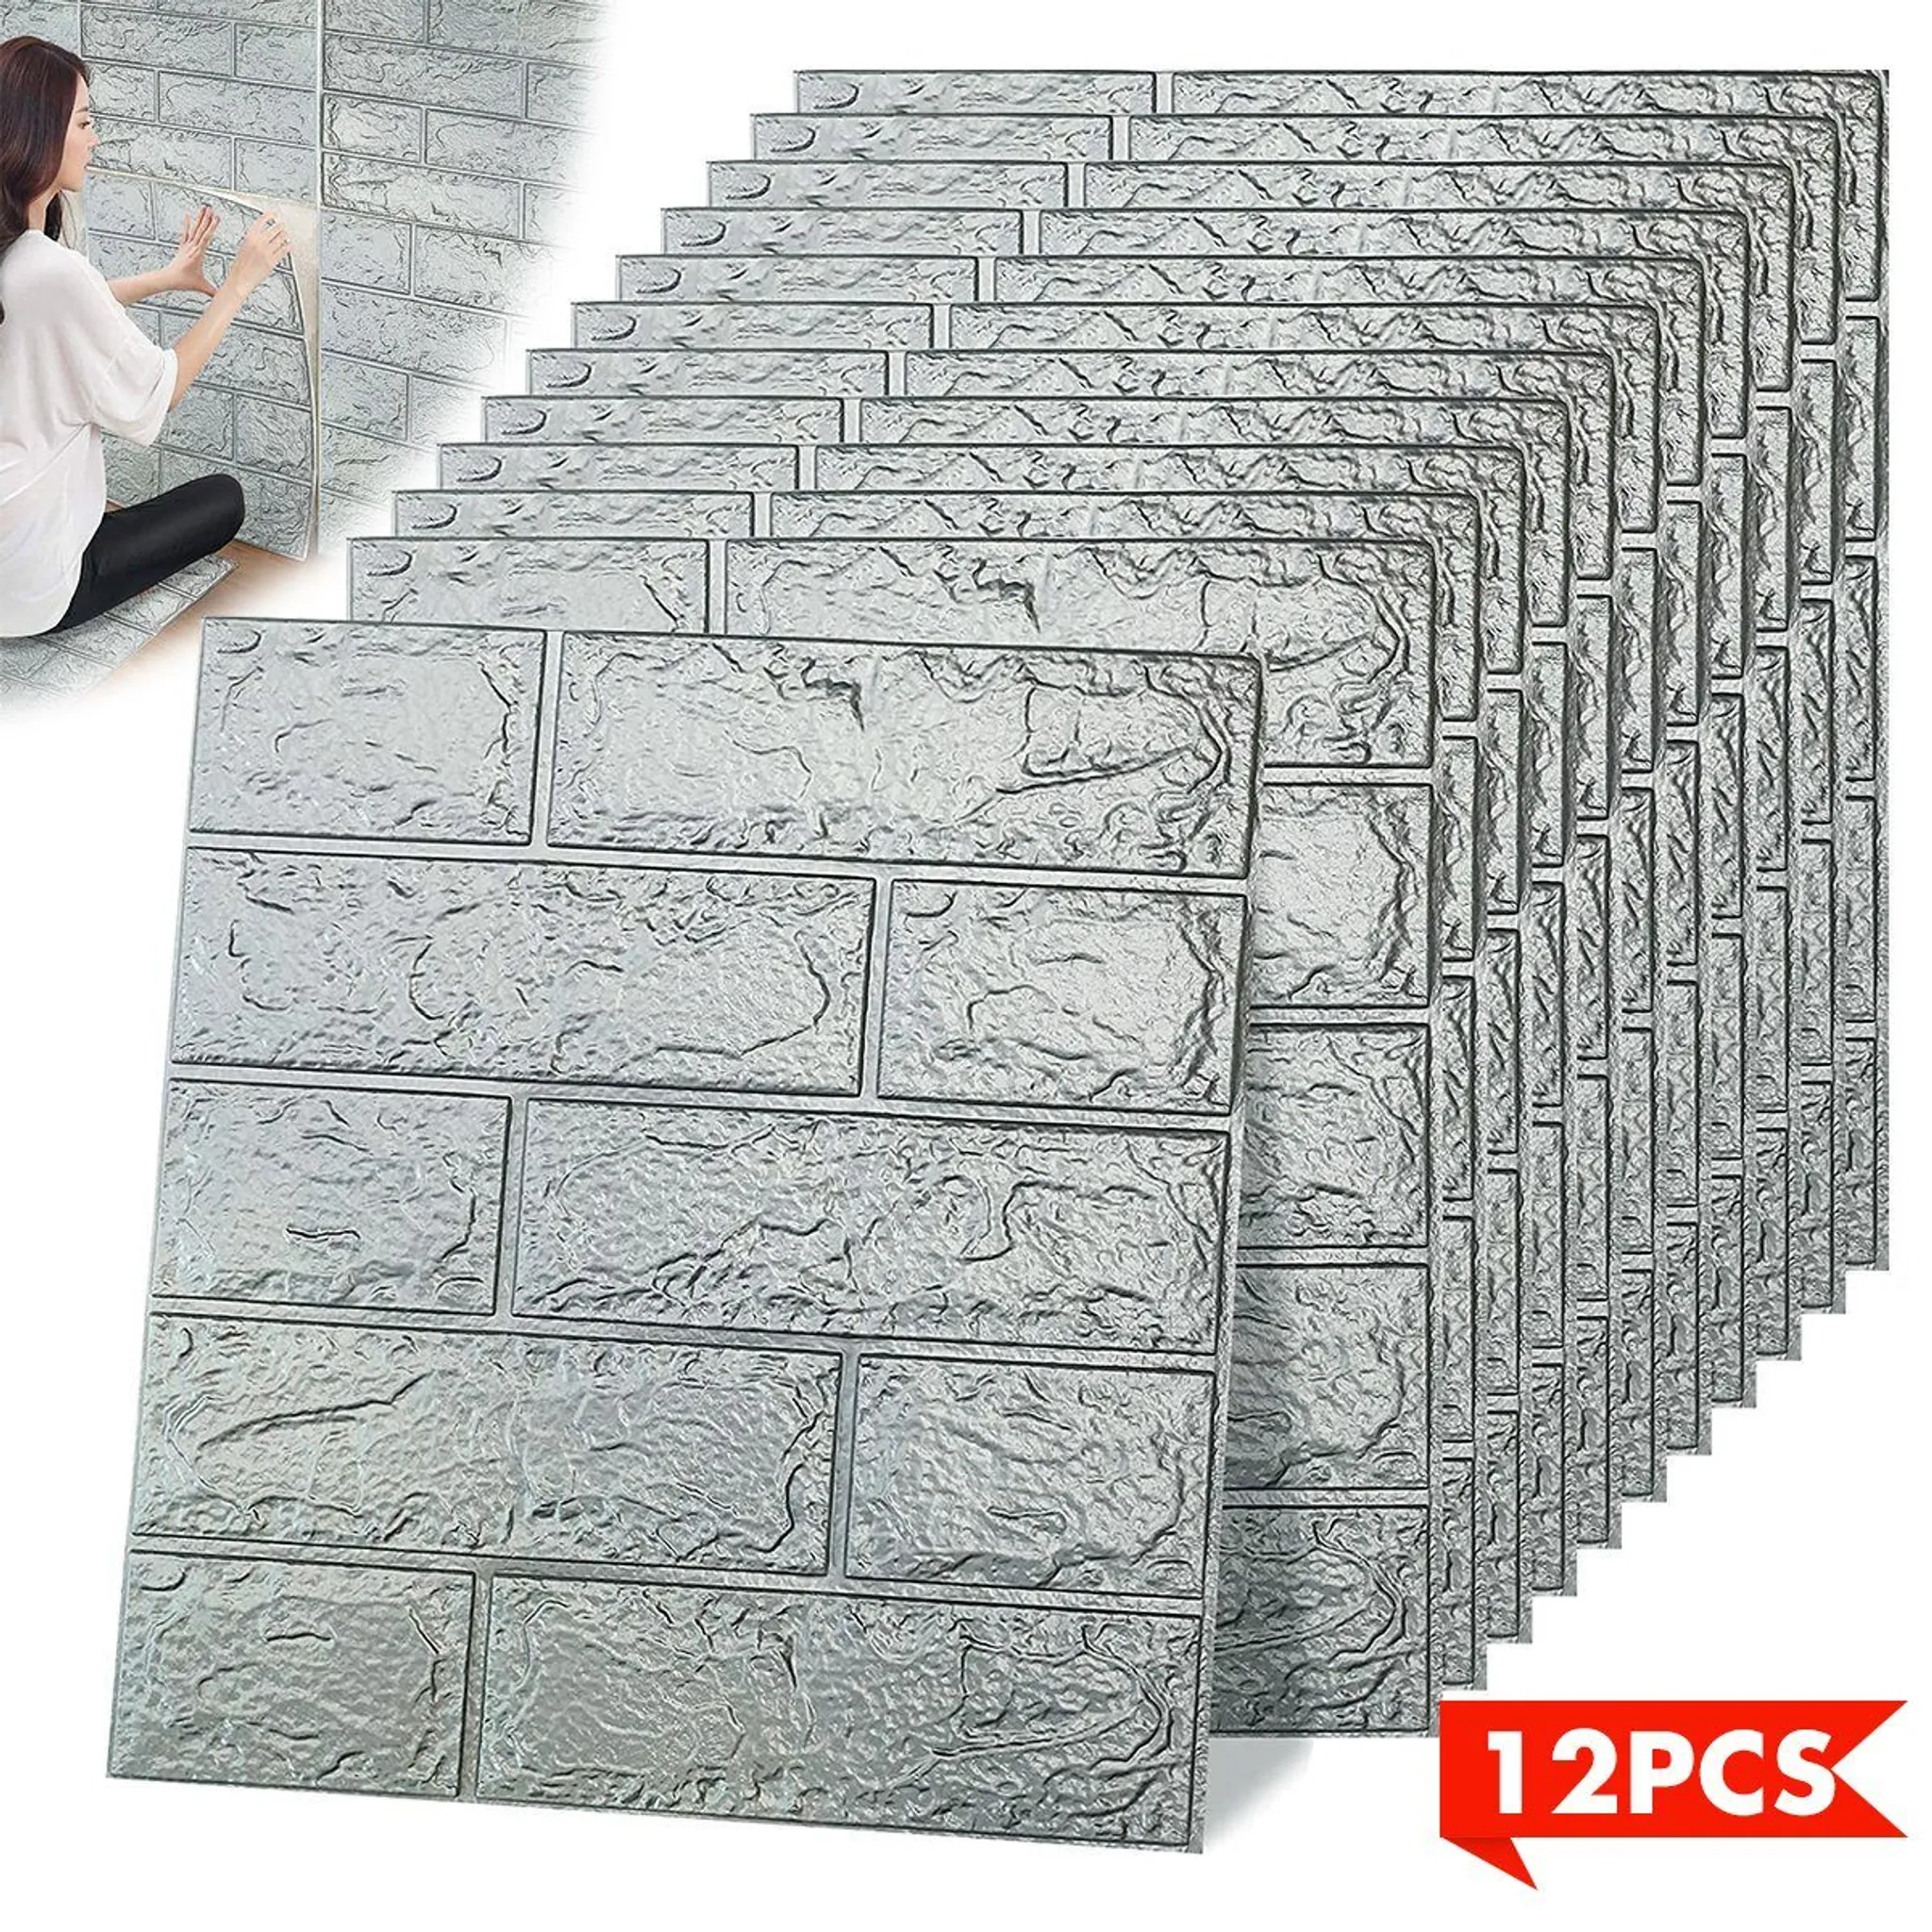 10Pcs 3D Fliesen Ziegel Wand Aufkleber 30*30cm PVC Selbst Klebe Schaum  Panel Wasserdichte Wand Aufkleber Für wohnzimmer Schlafzimmer TV Wand